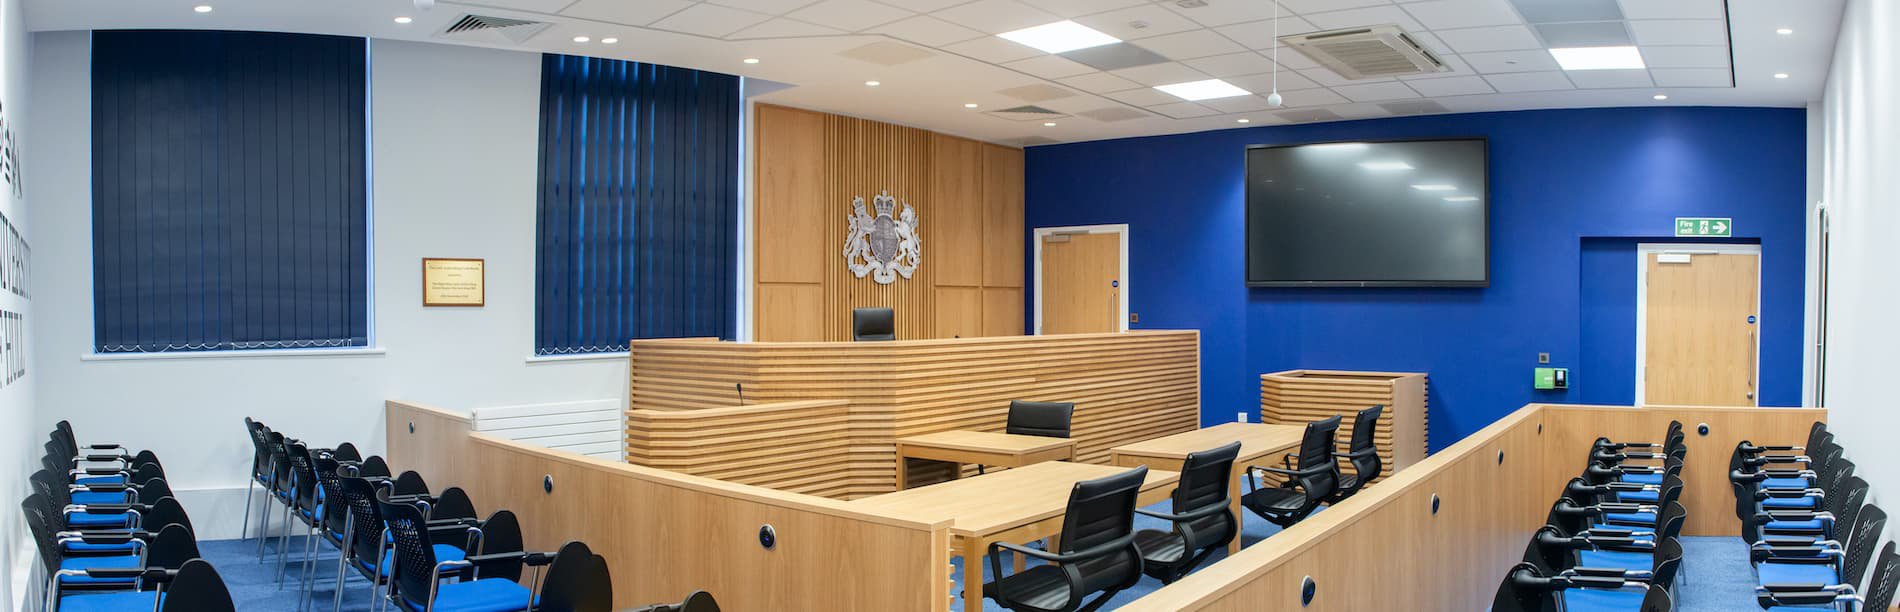 Law mock courtroom